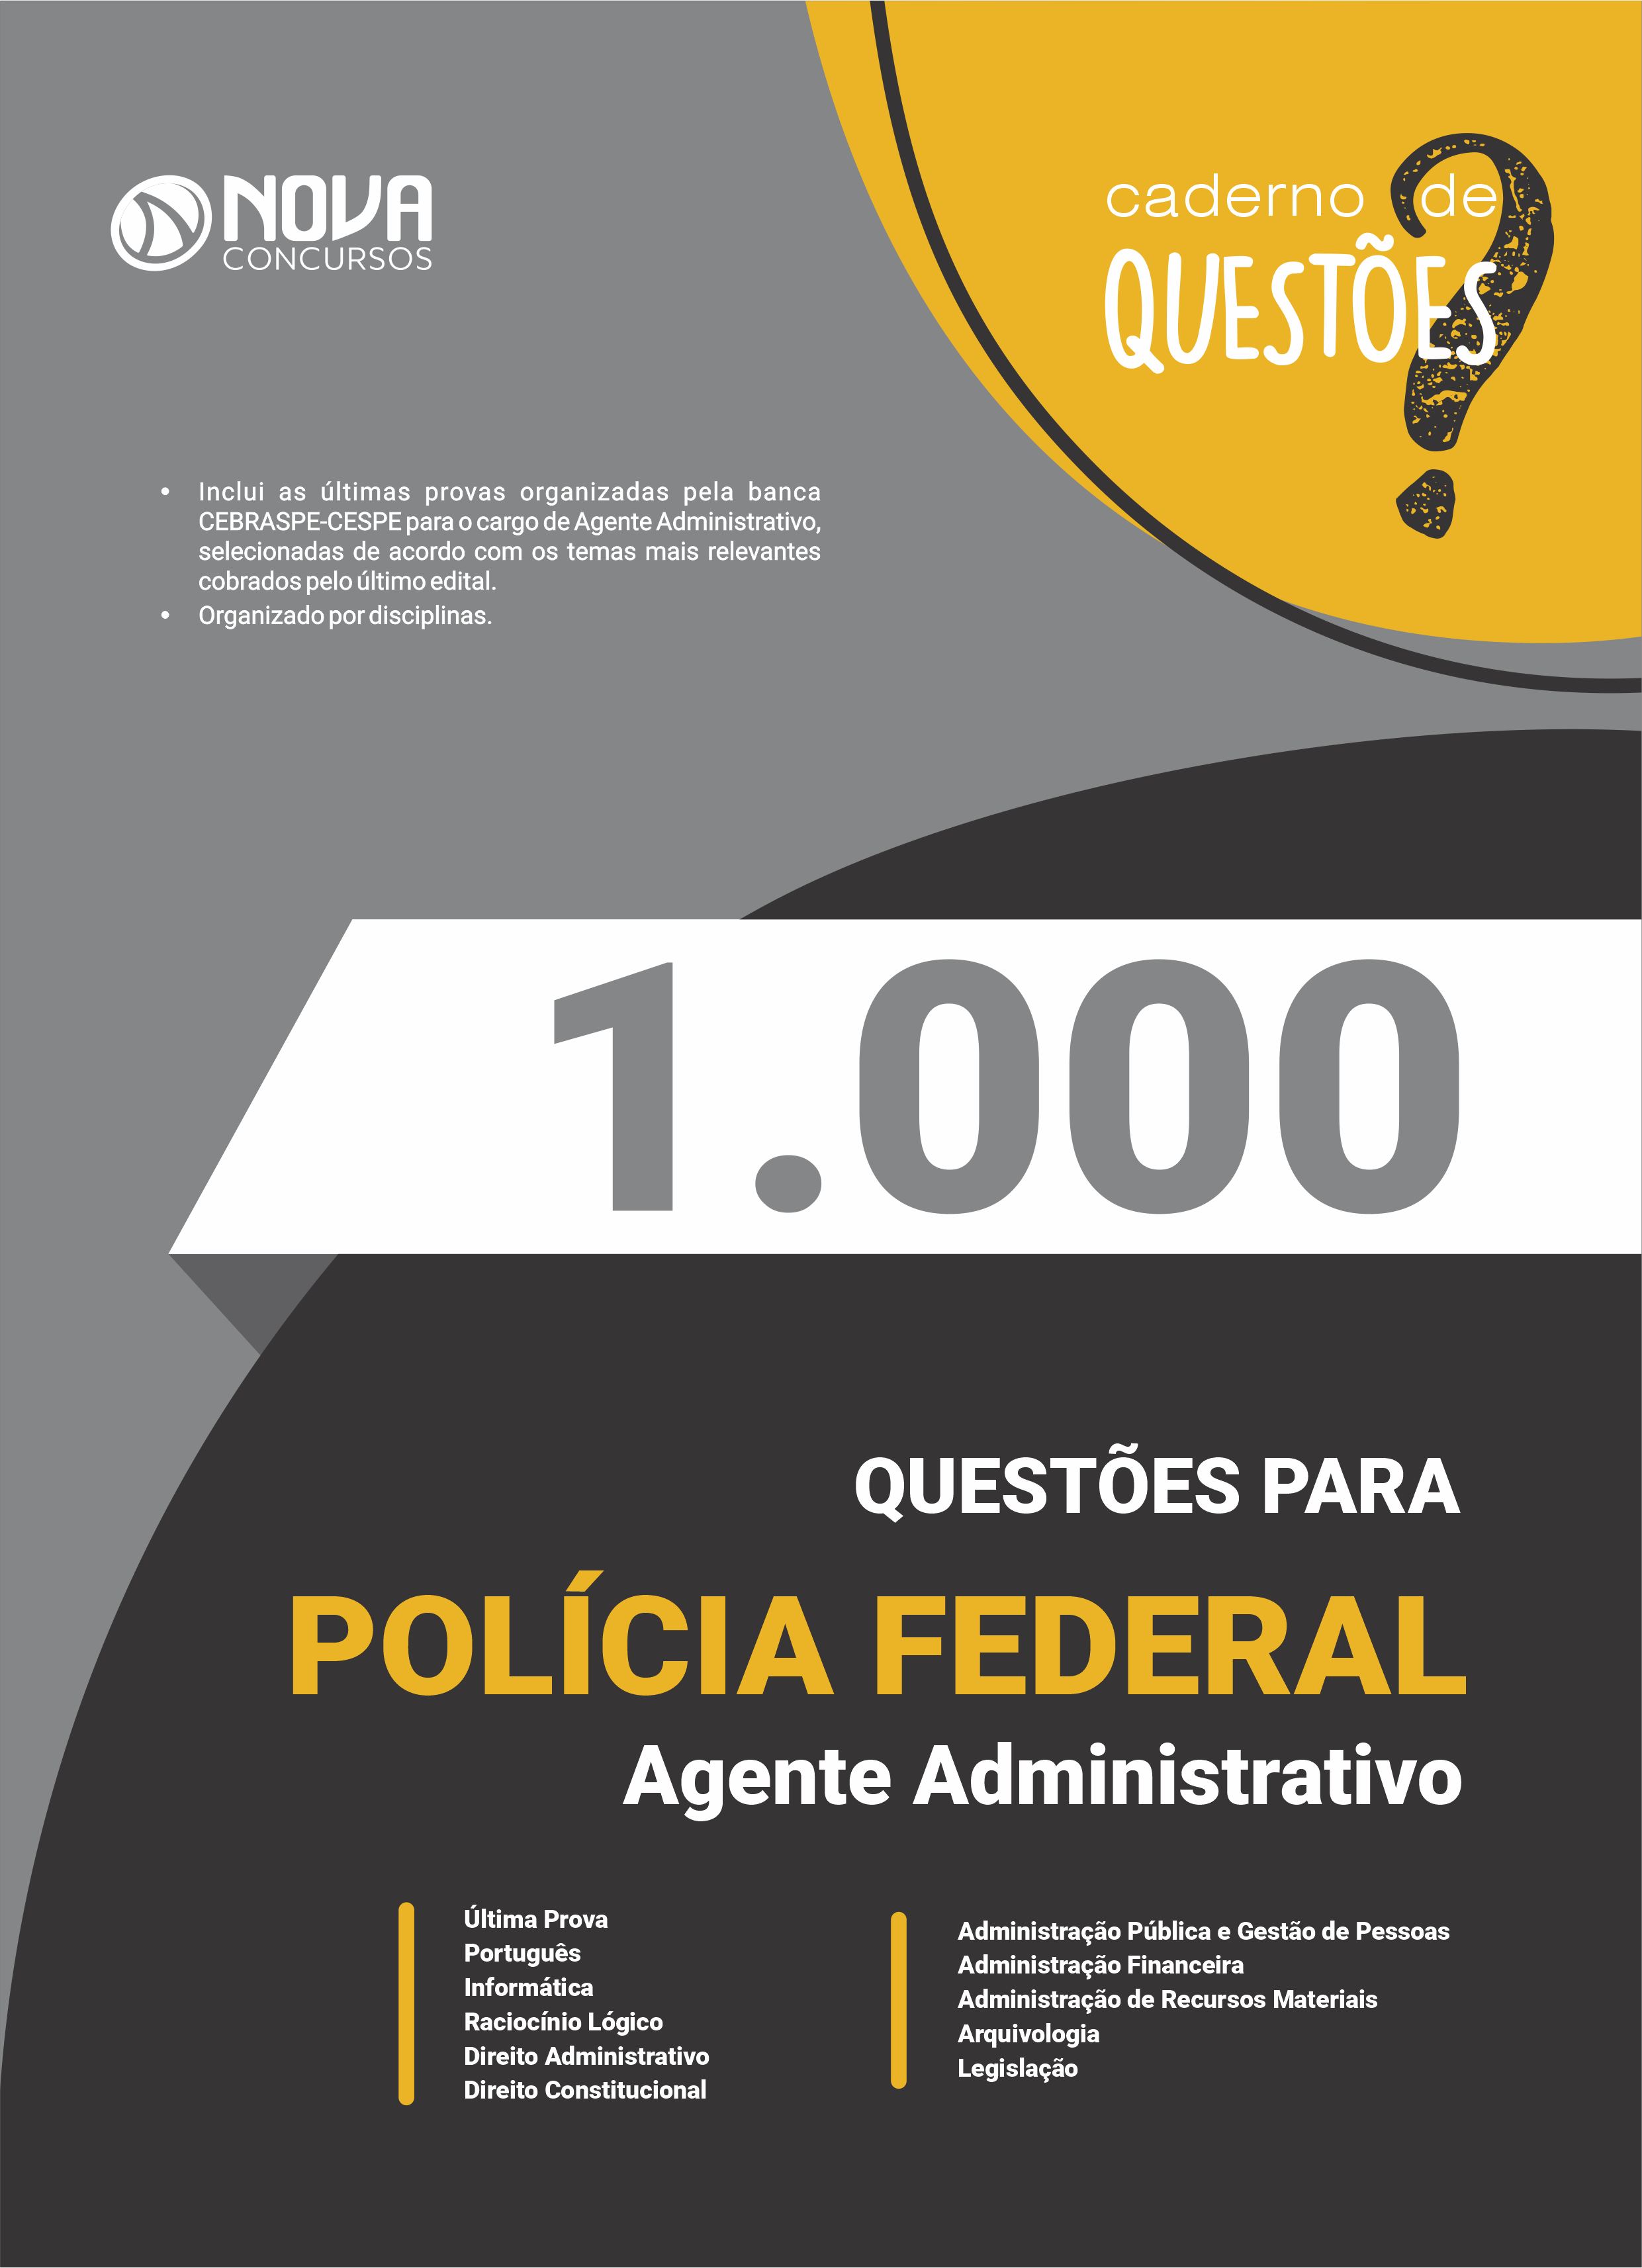 1000 QUESTÕES DE PORTUGUÊS PDF COM GABARITO.